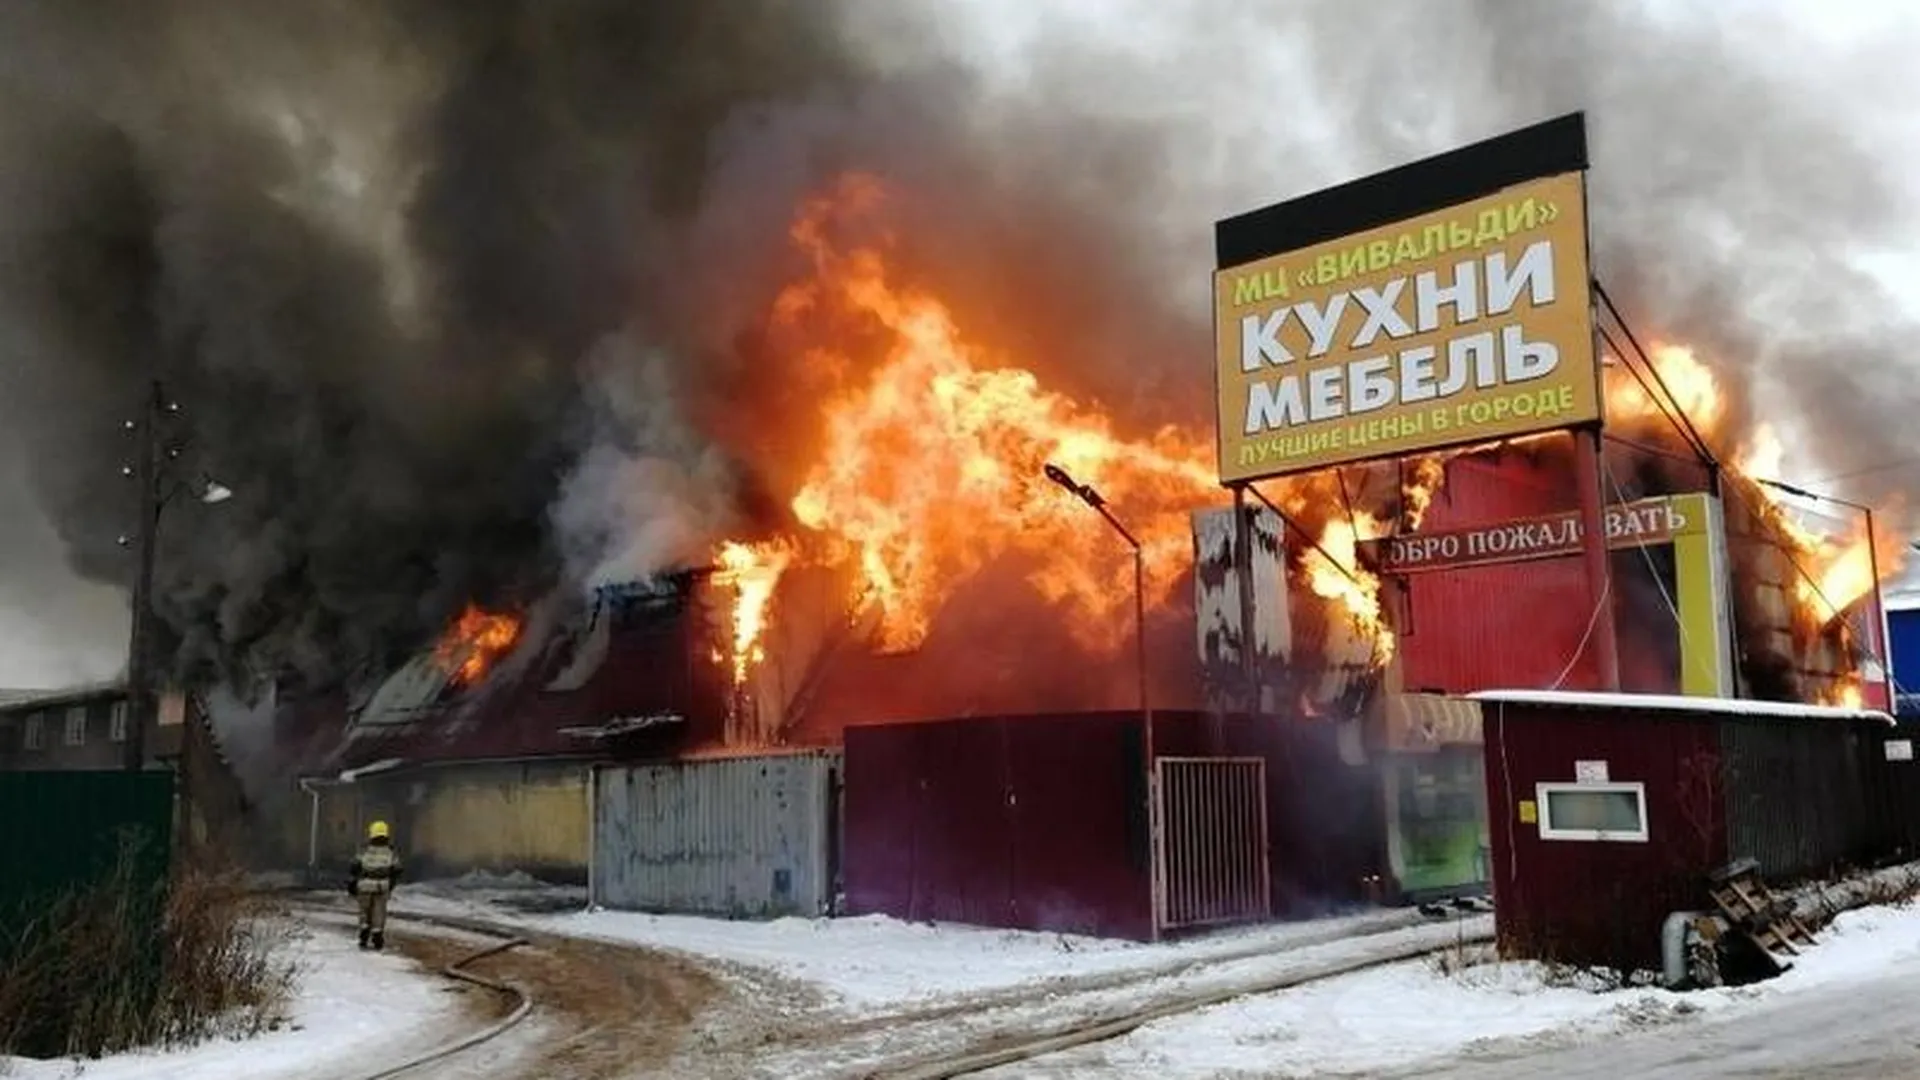 Мебельный сгорел. Пожар на мебельной фабрике в Щелково. Сгоревшая мебельная фабрика. Г Фрязино пожар. Пожар в Щёлково сегодня.